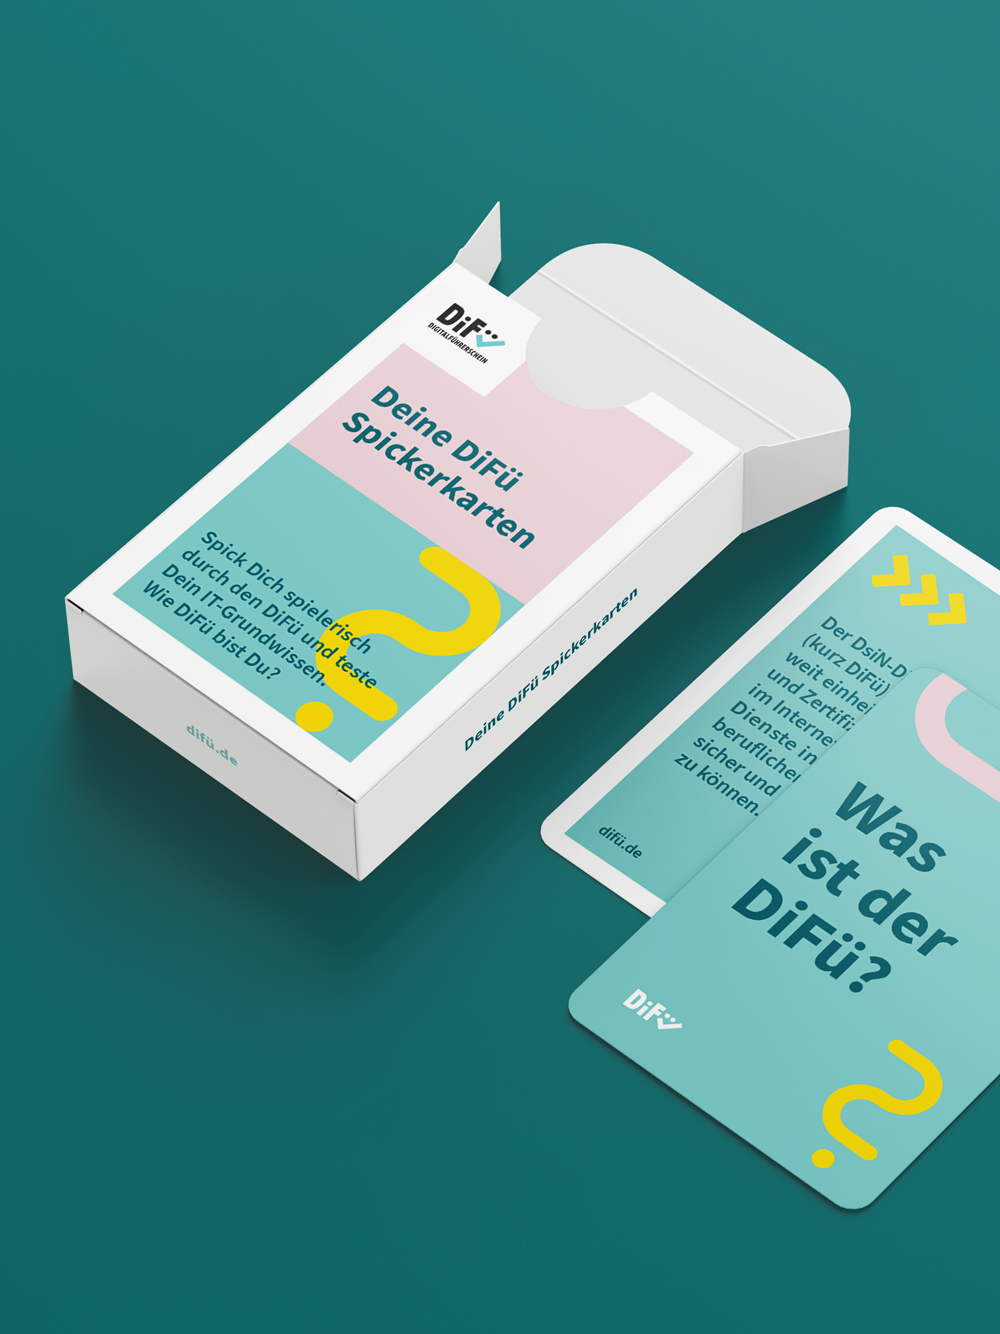 DiFü Digitalführerschein Corporate Design Spielkarten Box und Kartenstapel auf türkisem Hintergrund Icons und Text zum Thema Difü und IT-Grundwissen